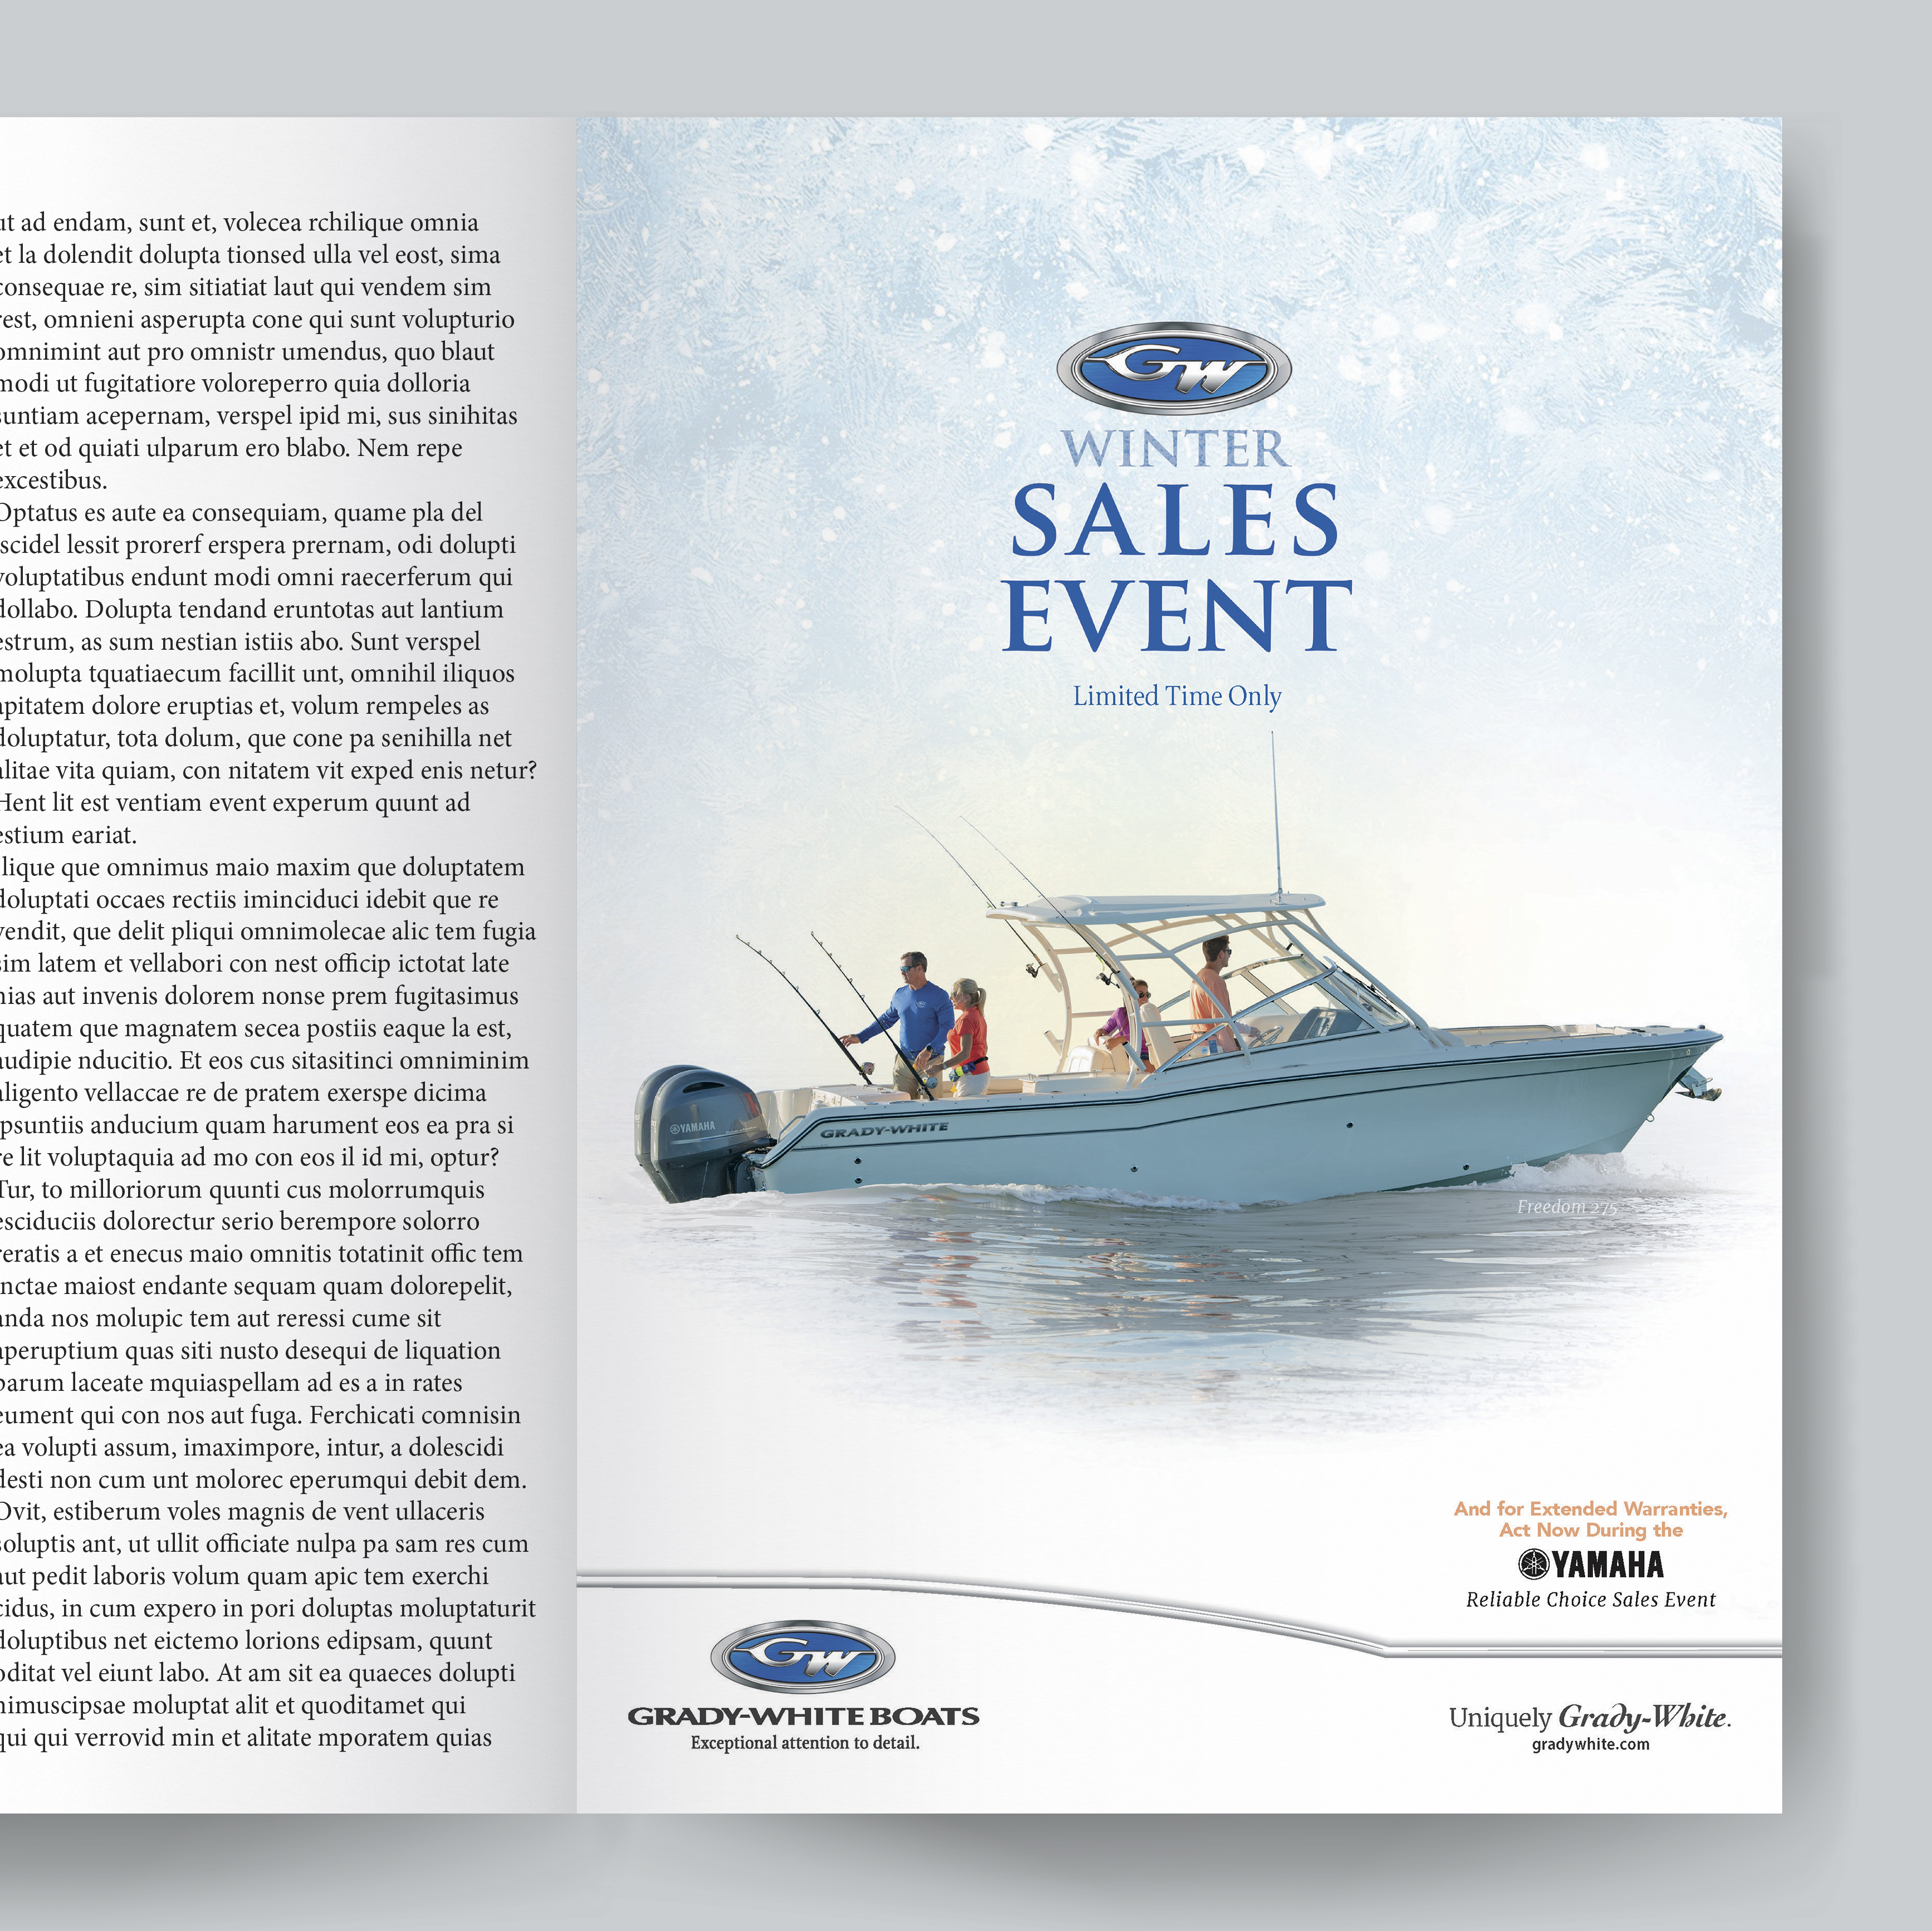 Grady-White Boats Winter Sales Event Print Ad